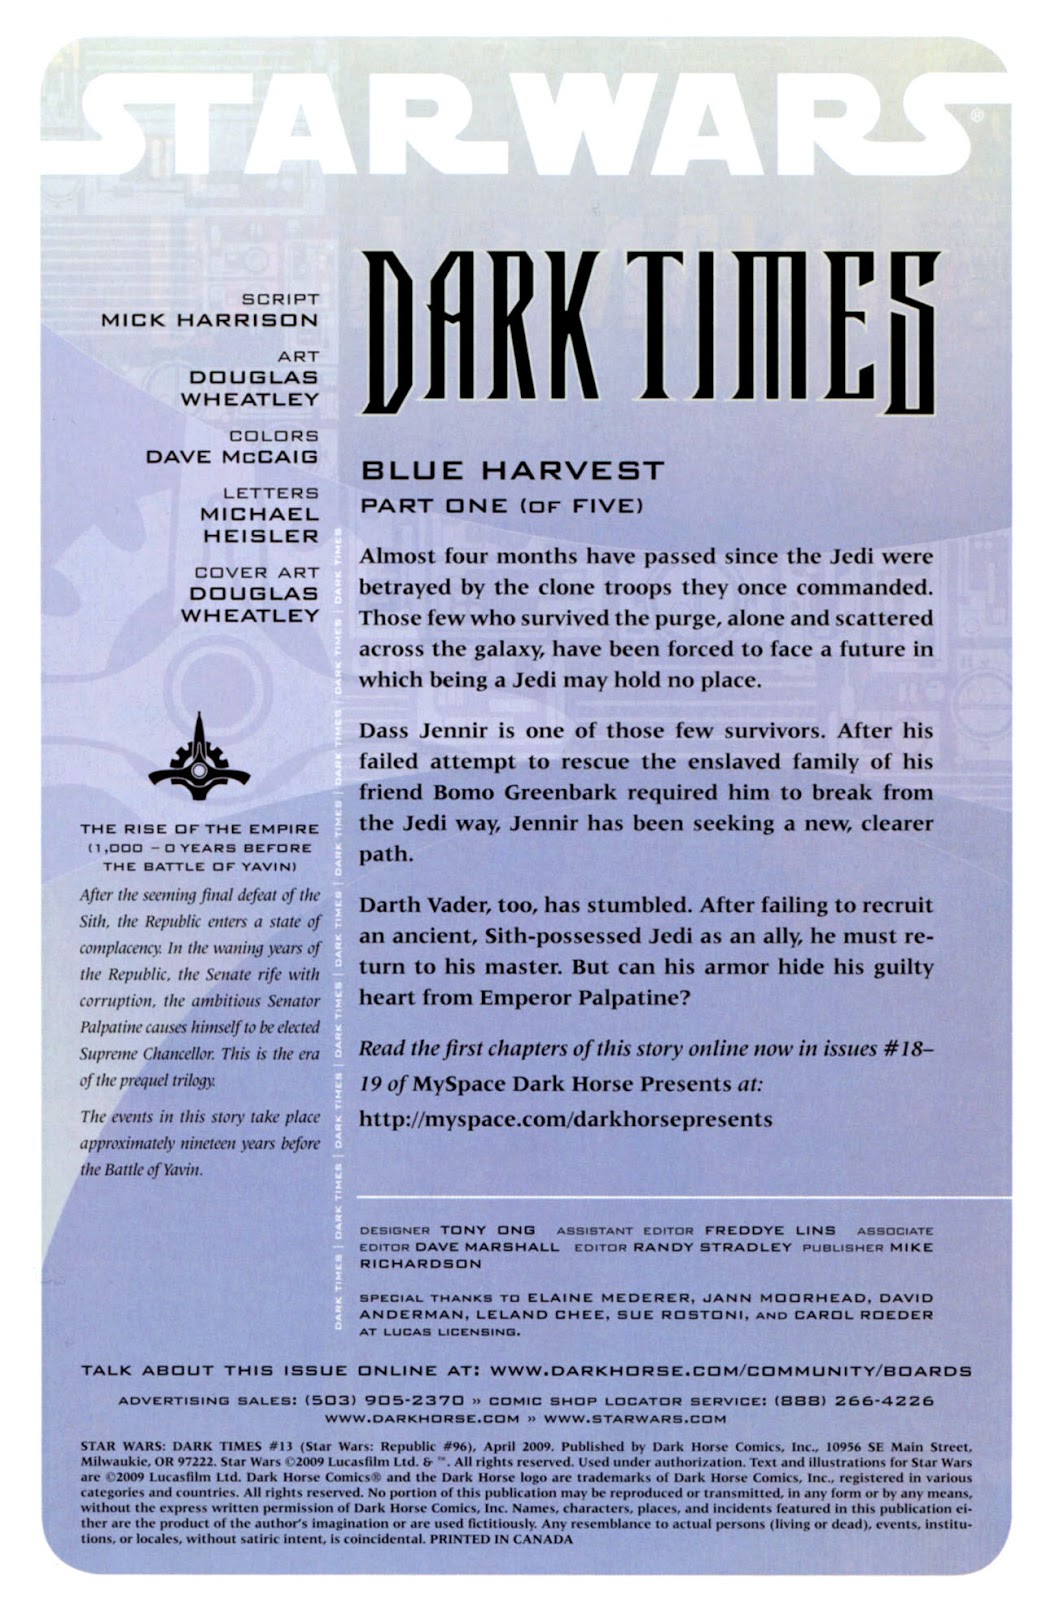 Star Wars: Dark Times issue 13 - Blue Harvest, Part 1 - Page 2